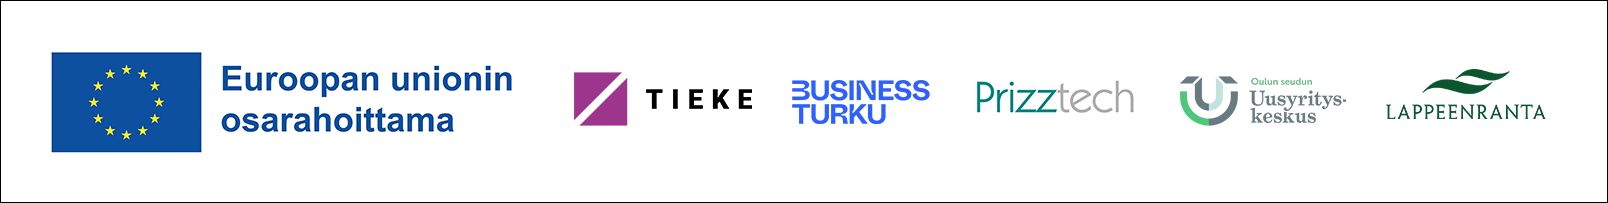 Kuvassa on Digiyritysneuvonta-hankkeen kumppanit. EU-lippu, jonka vieressä lukee Euroopan unionin osarahoittama. Lisäksi kuvassa on TIEKEn, Business Turun, Prizztechin, Oulun seudun Uusyrityskeskuksen ja Lappeenrannan logot. 